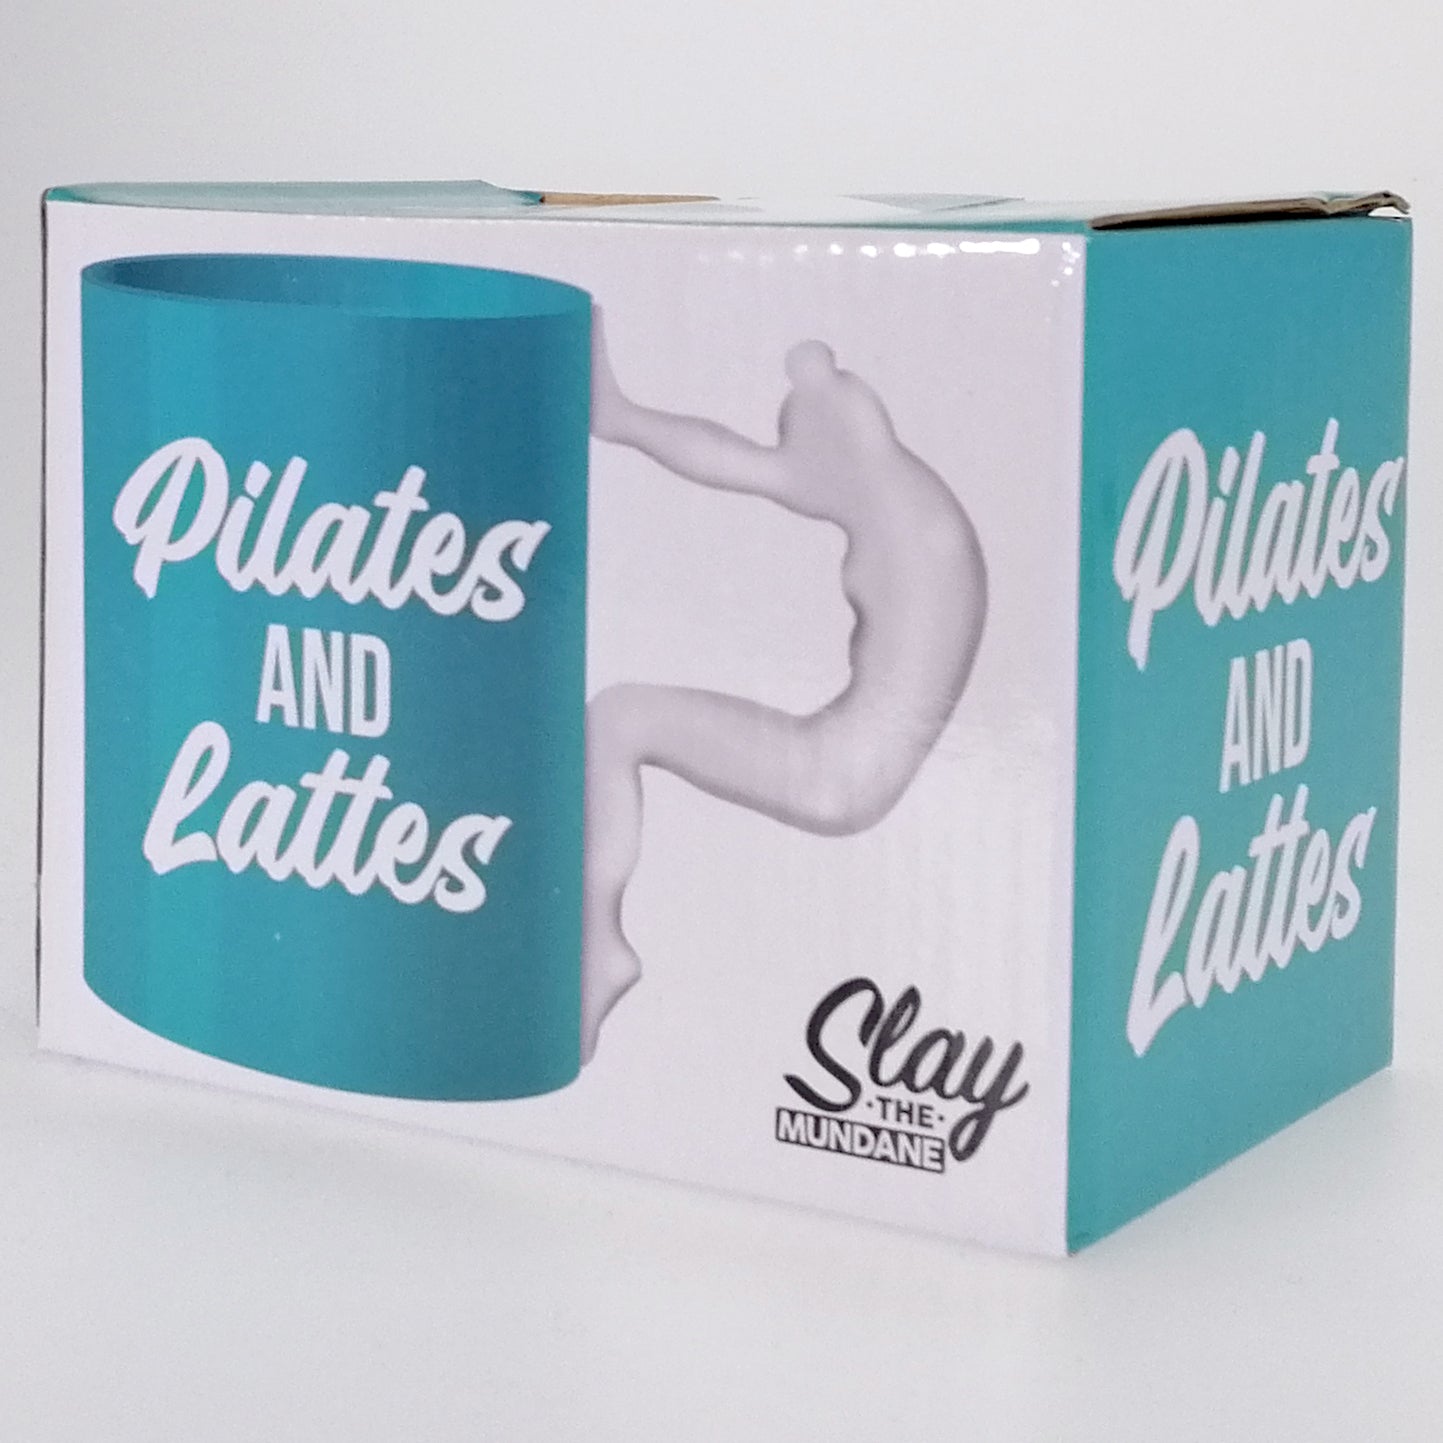 Pilates Mug "Pilates and Lattes" - Boxed Mug